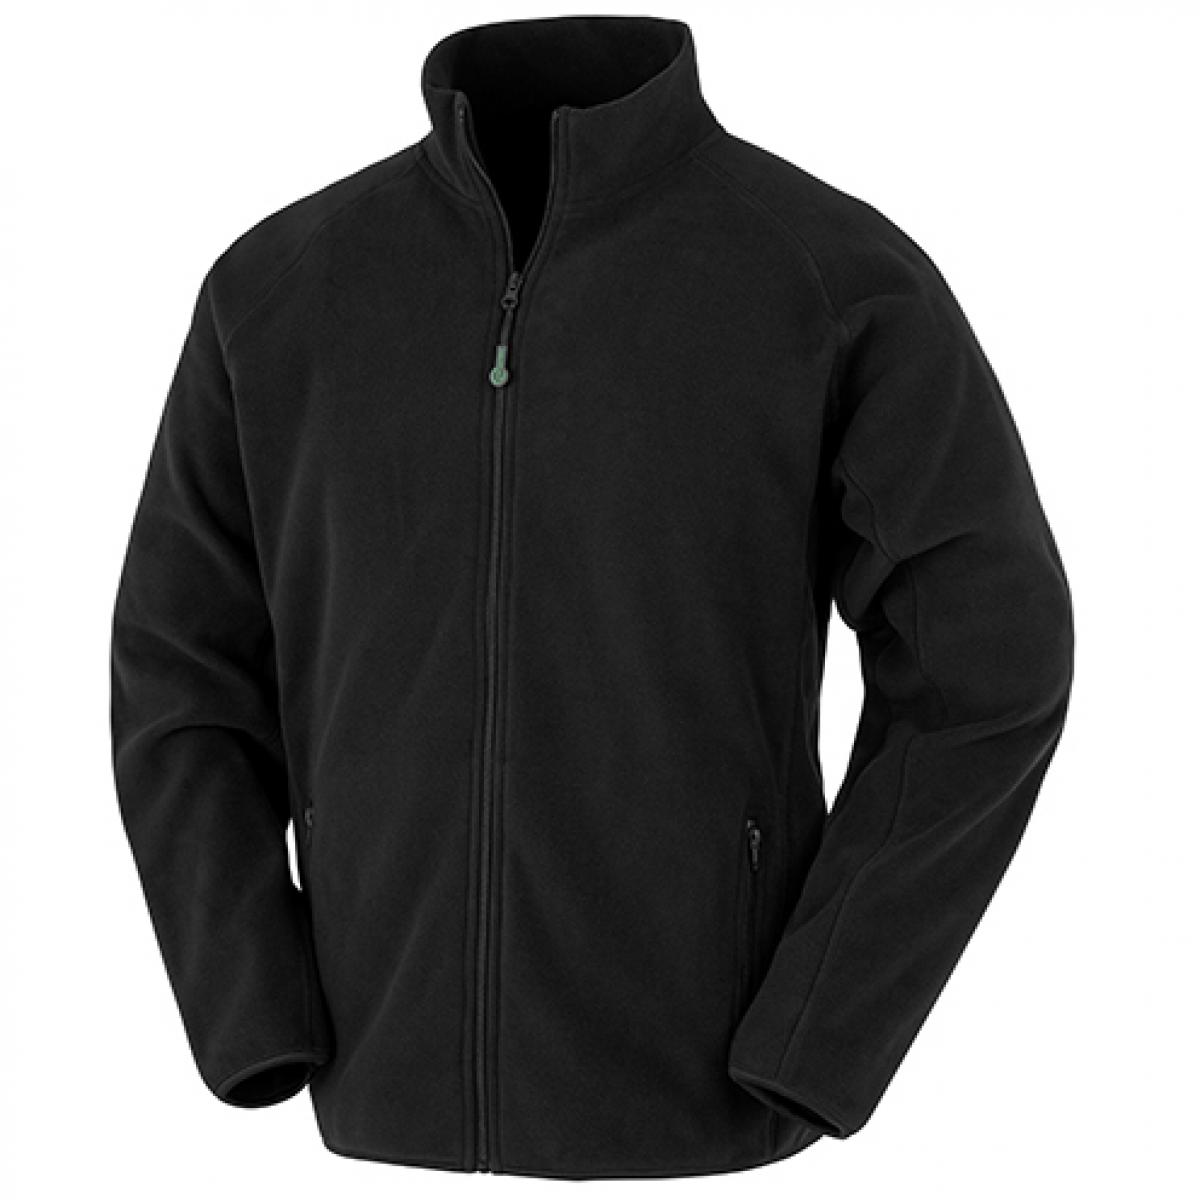 Hersteller: Result Genuine Recycled Herstellernummer: R903X Artikelbezeichnung: Recycled Fleece Polarthermic Jacket Farbe: Black